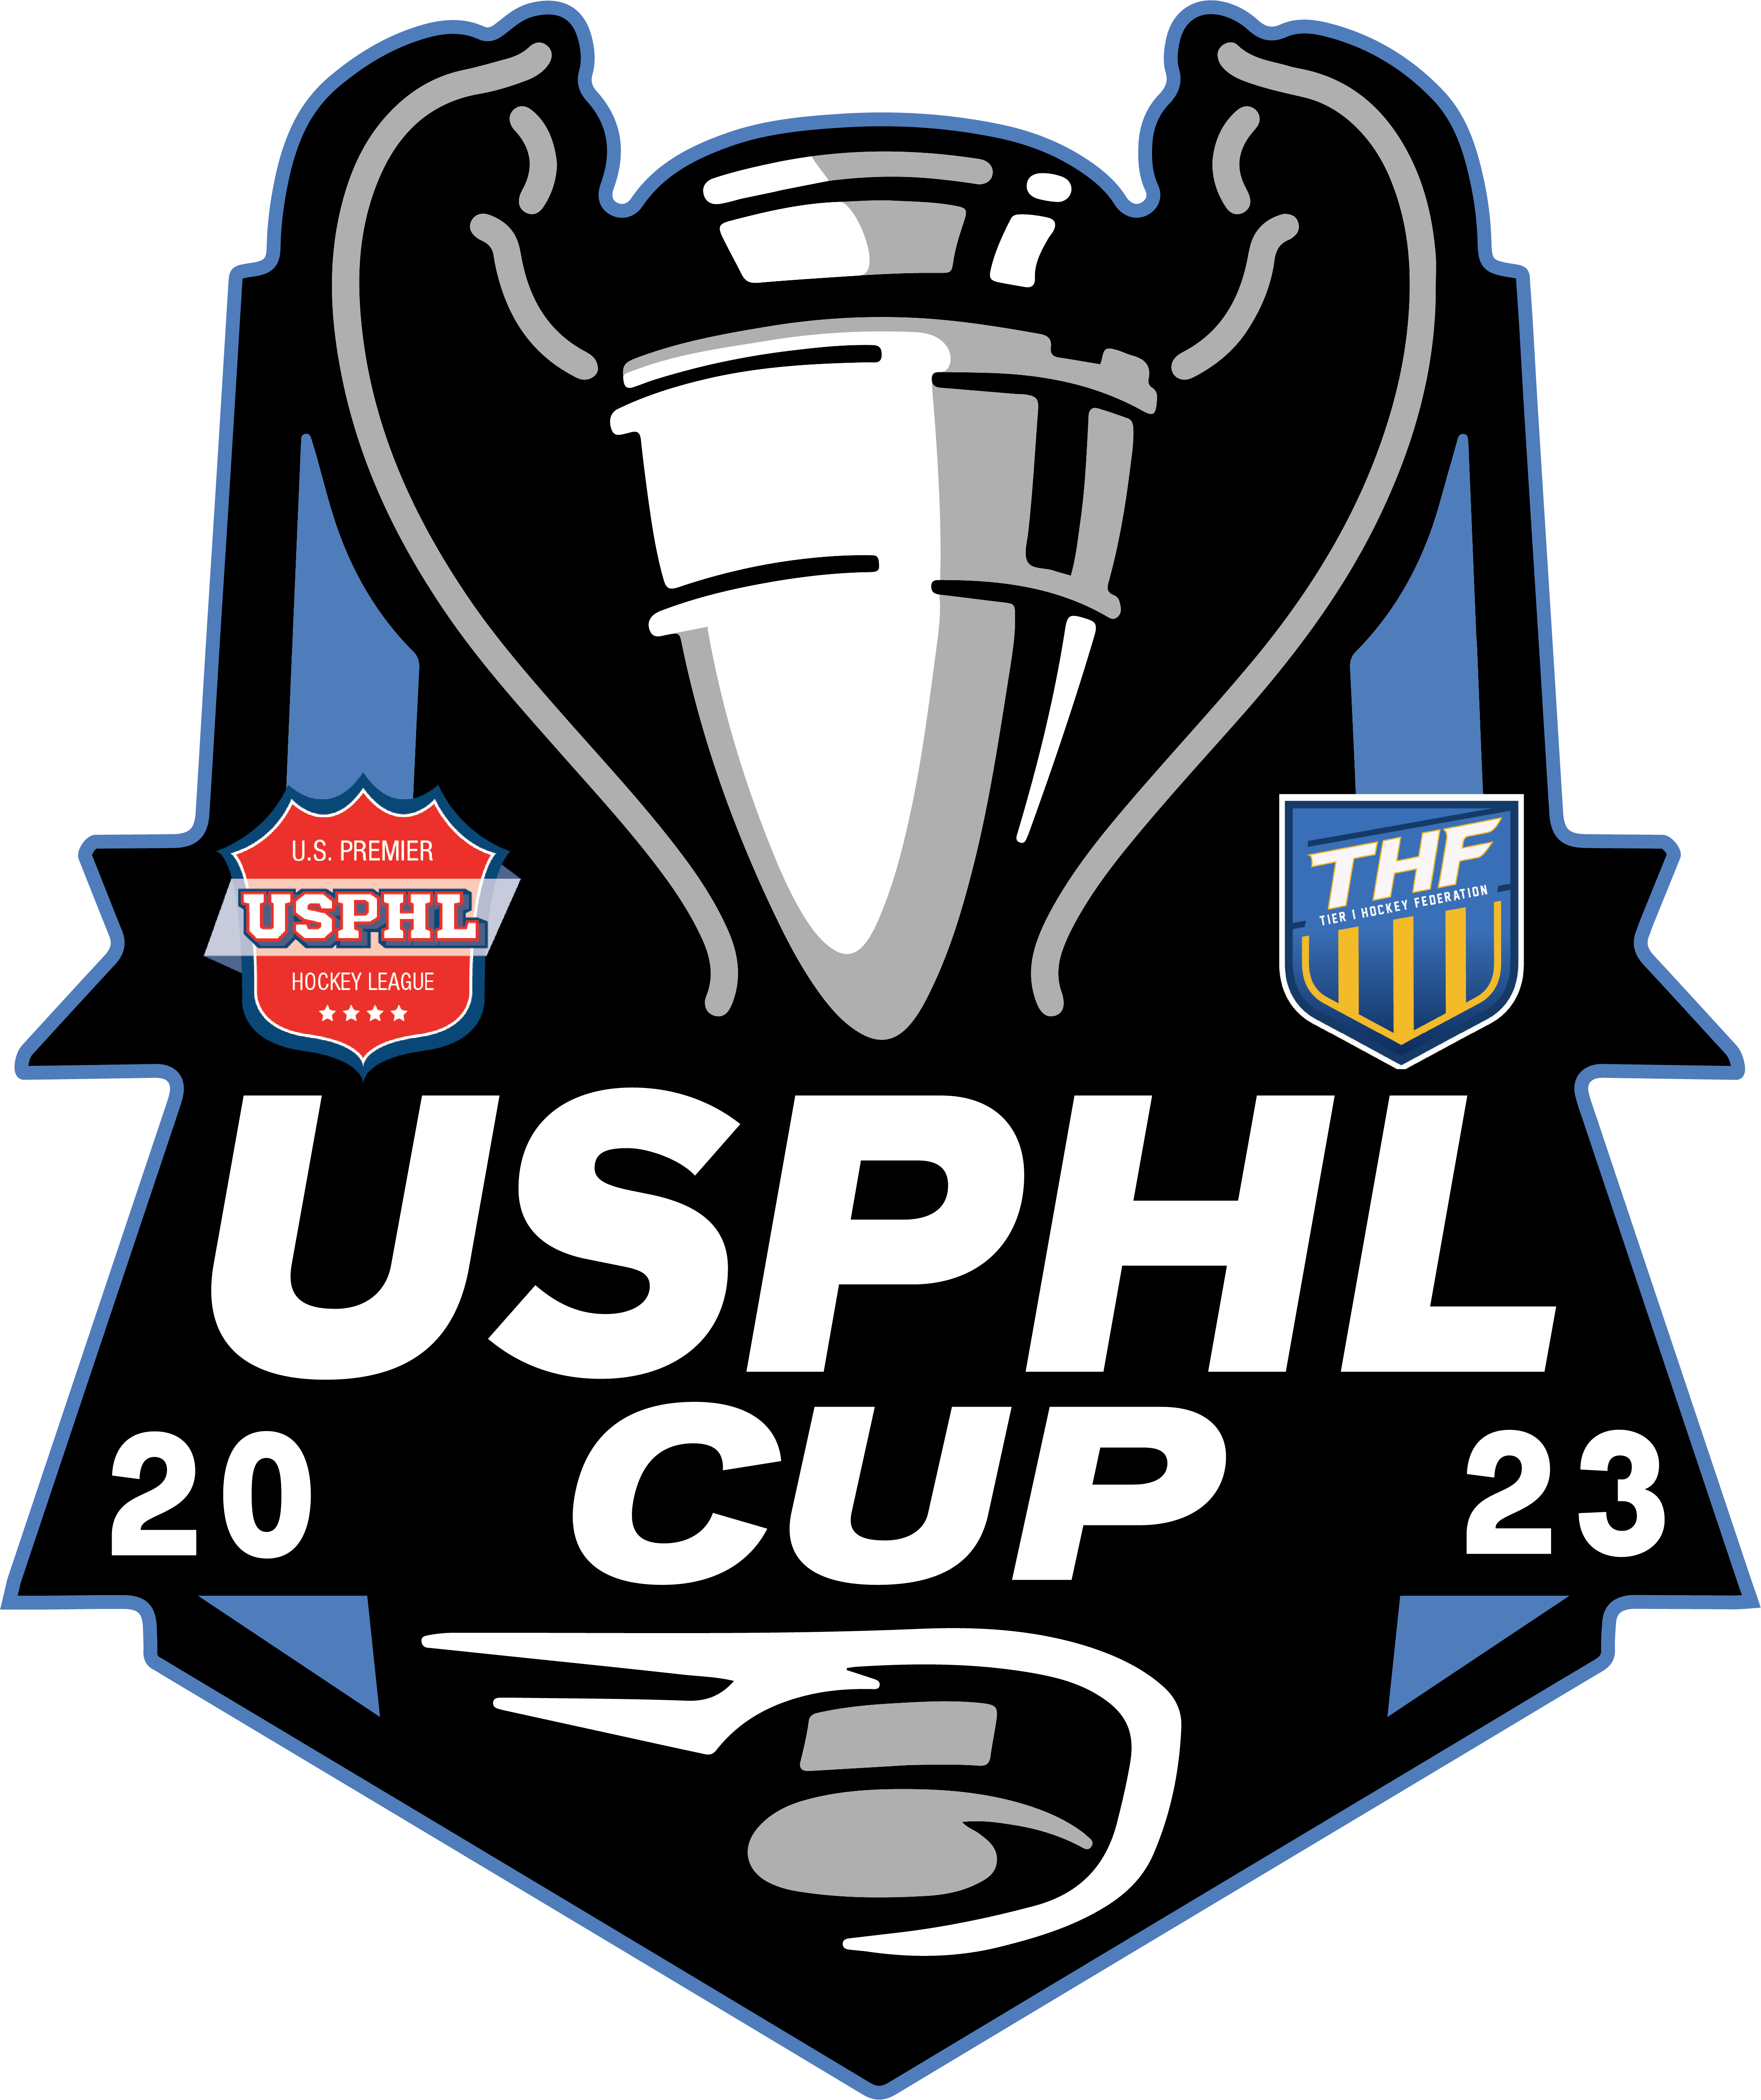 USPHL Cup